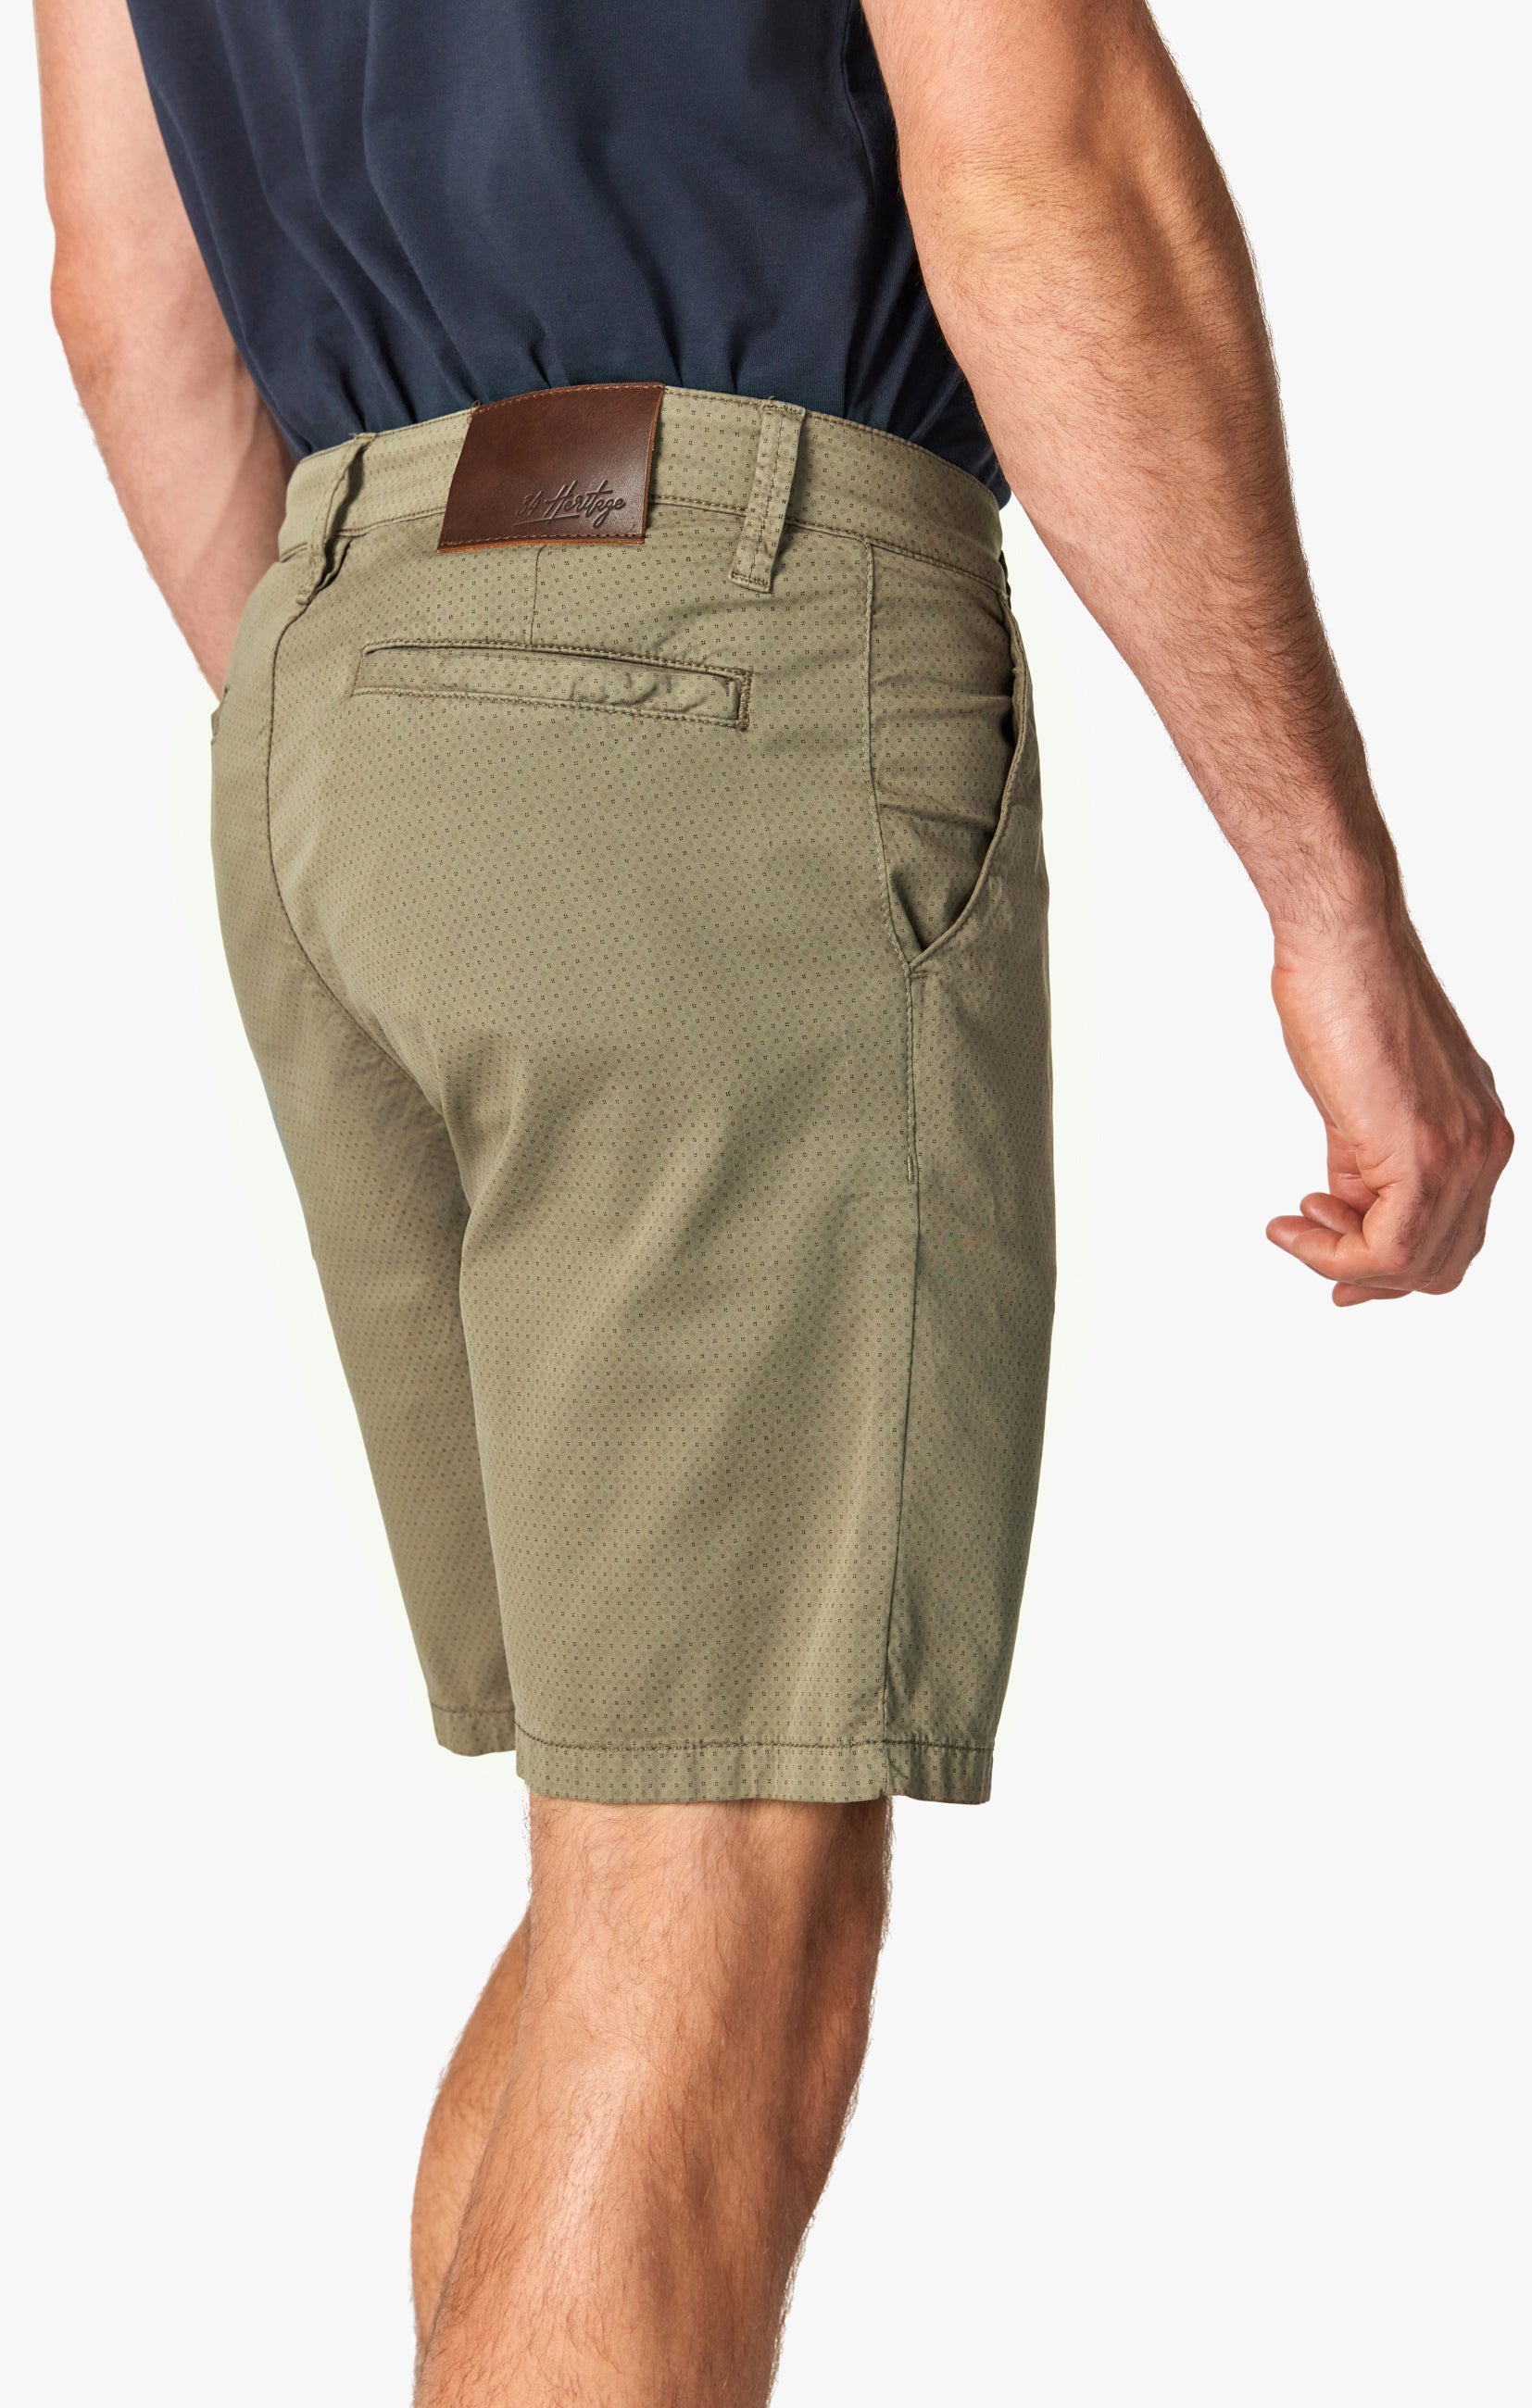 Arizona Slim Shorts in Dusty Olive Dot Image 3